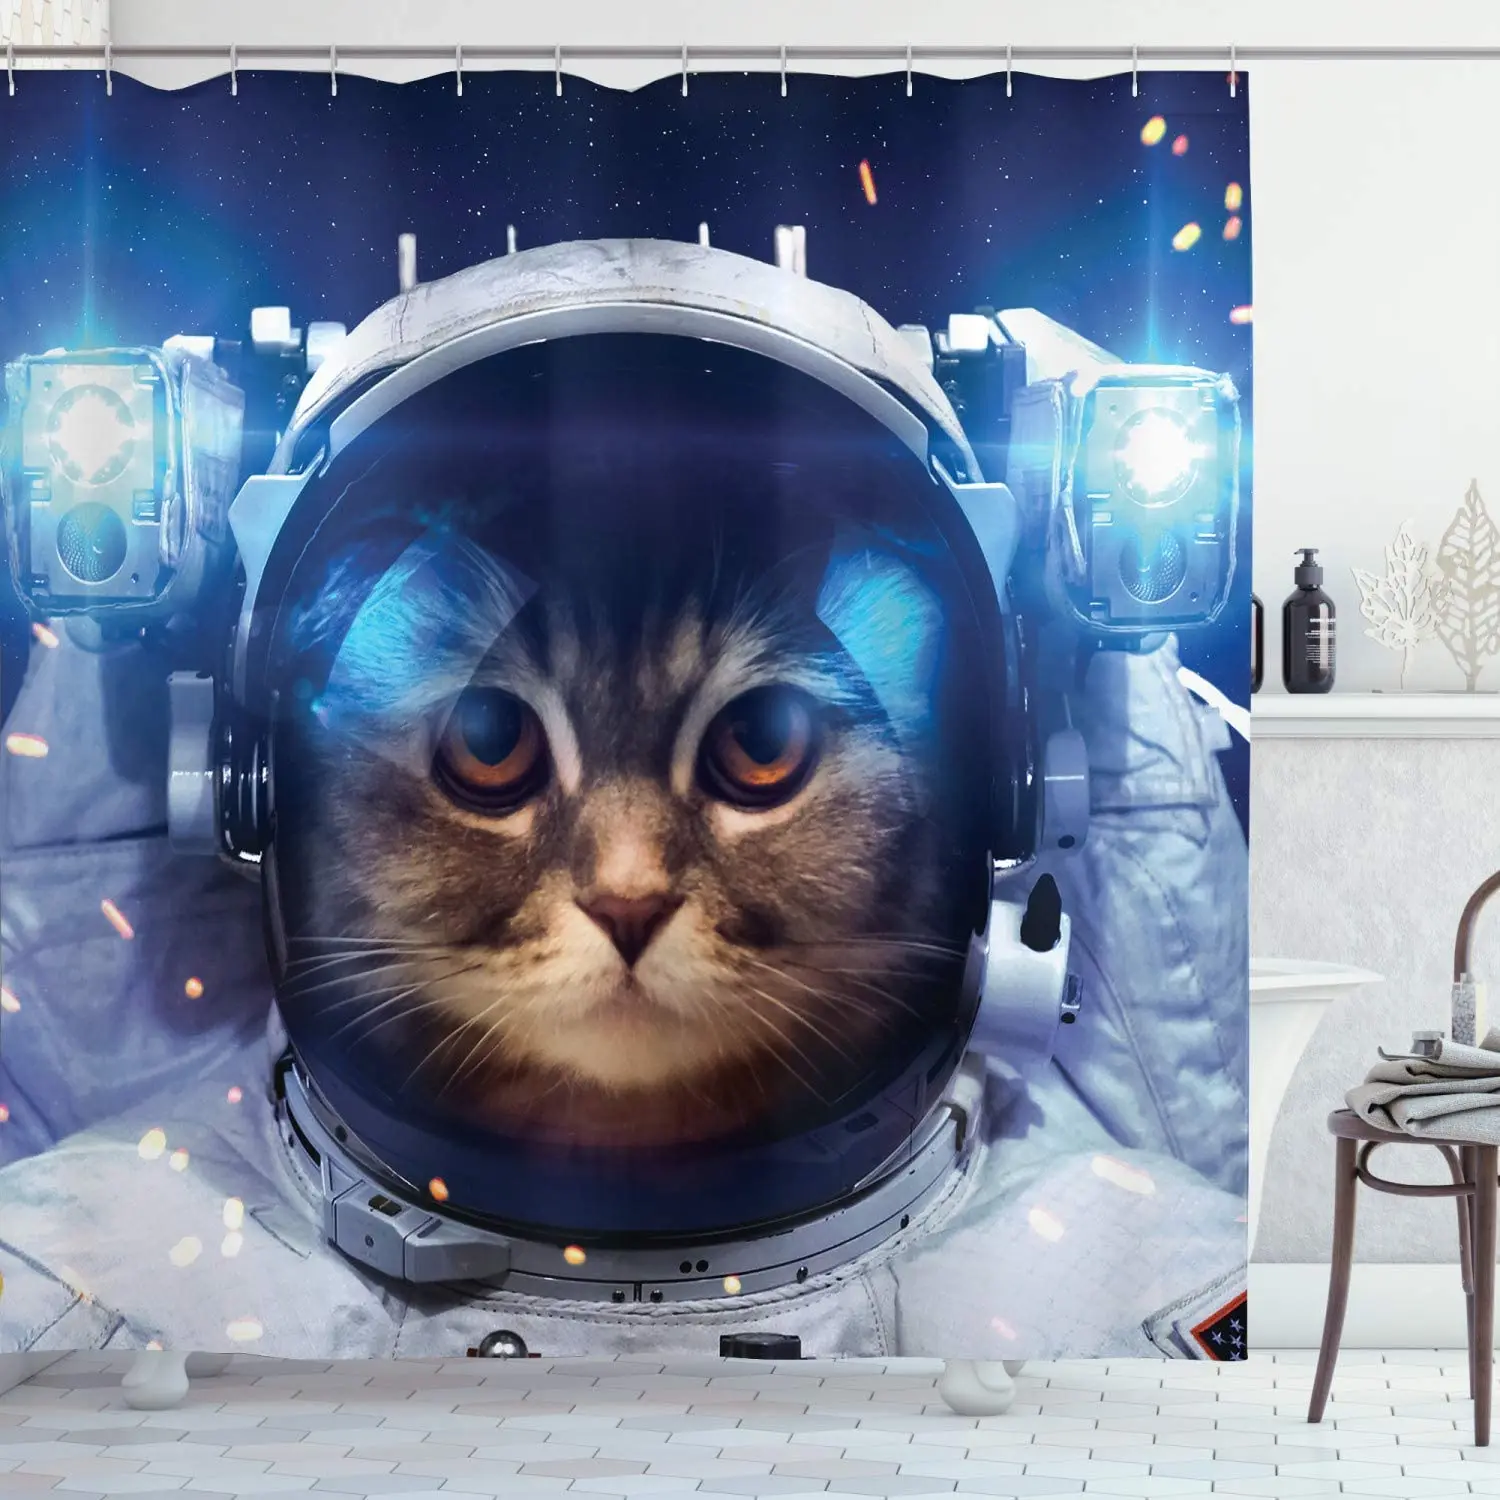 

Занавеска для душа «космическая кошка», занавеска для душа «Вселенная», тканевая занавеска для ванной комнаты, декоративный комплект с крю...